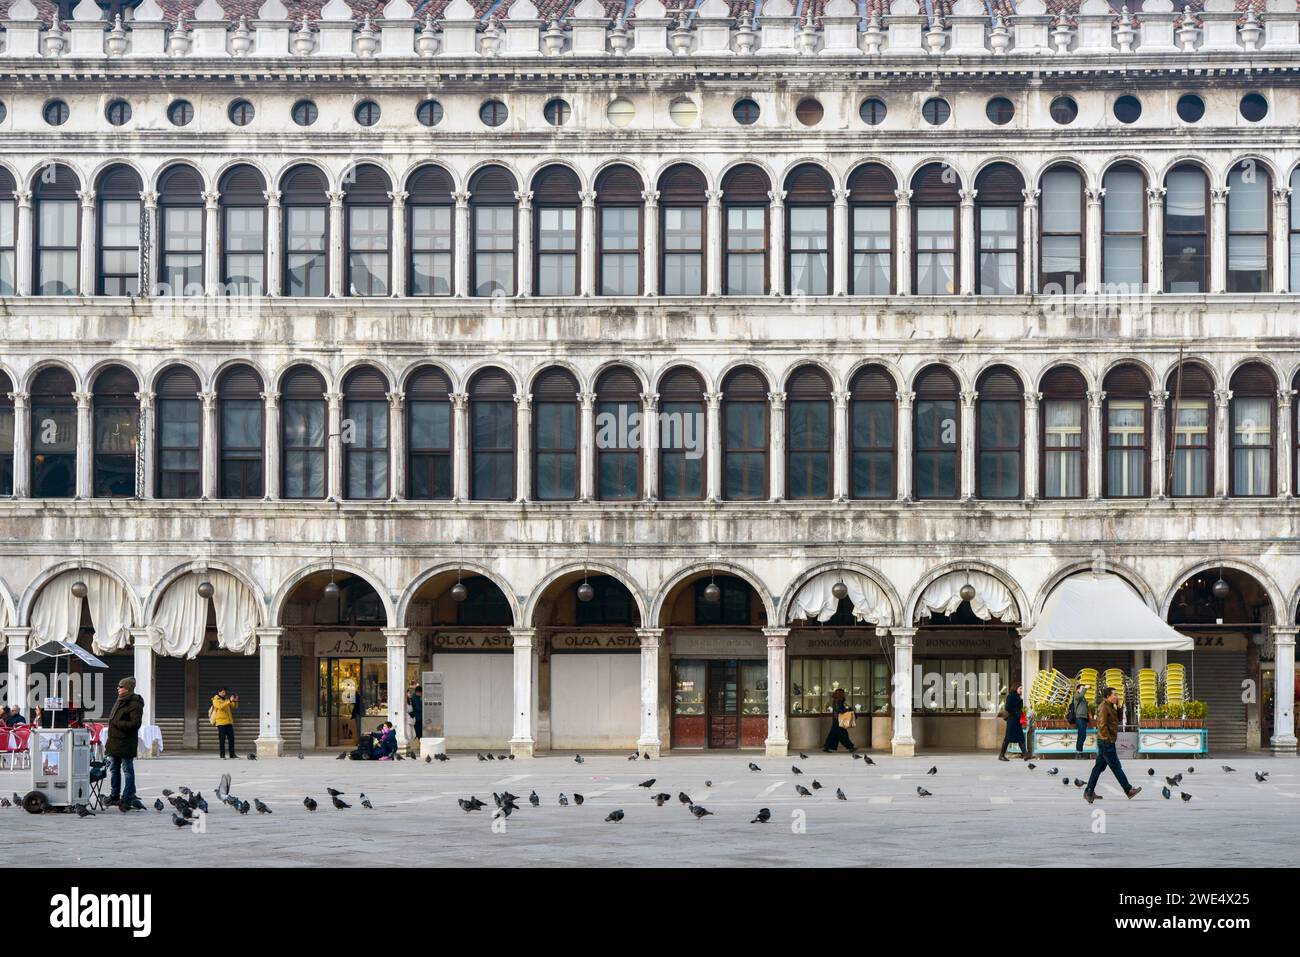 Als eines der berühmtesten Wahrzeichen auf dem Markusplatz von Venedig ist der Markusplatz oft weniger geschäftig, wenn es das Jahr ist. Stockfoto